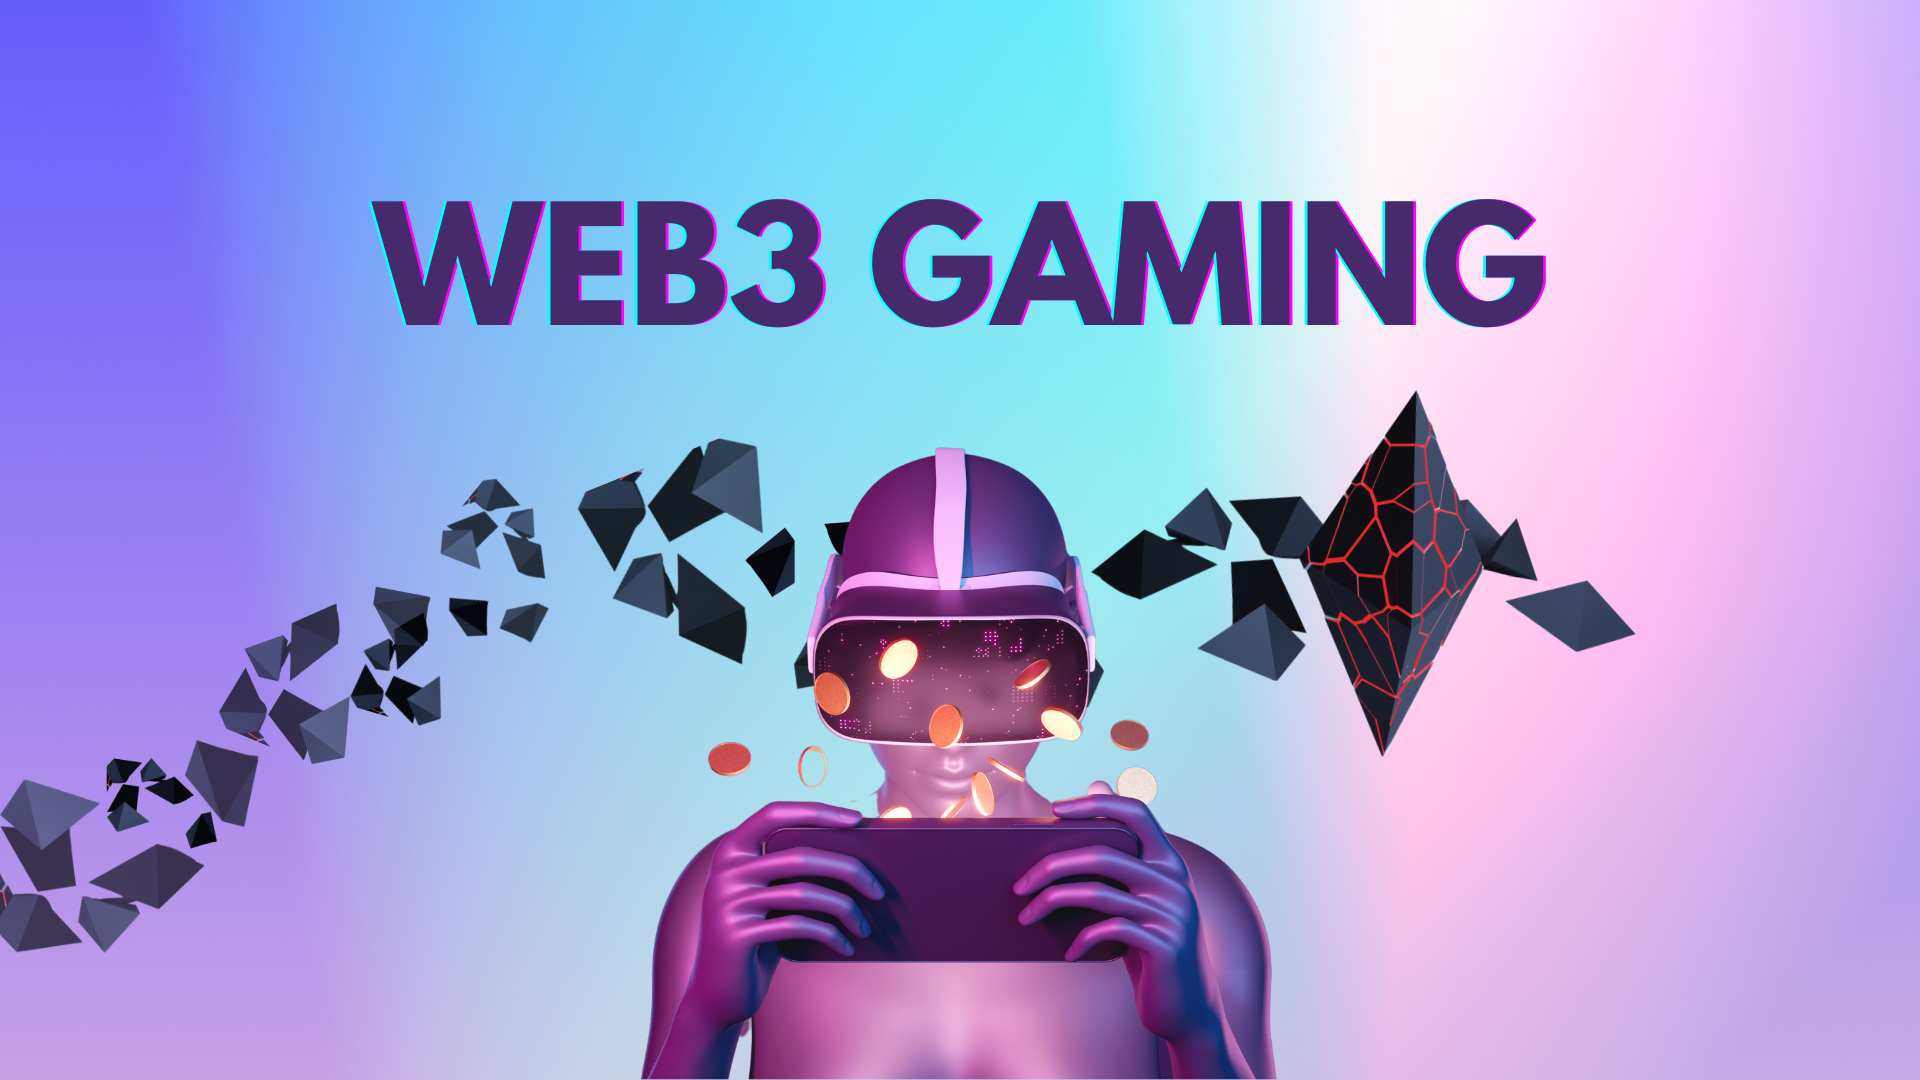 Web3 Gaming